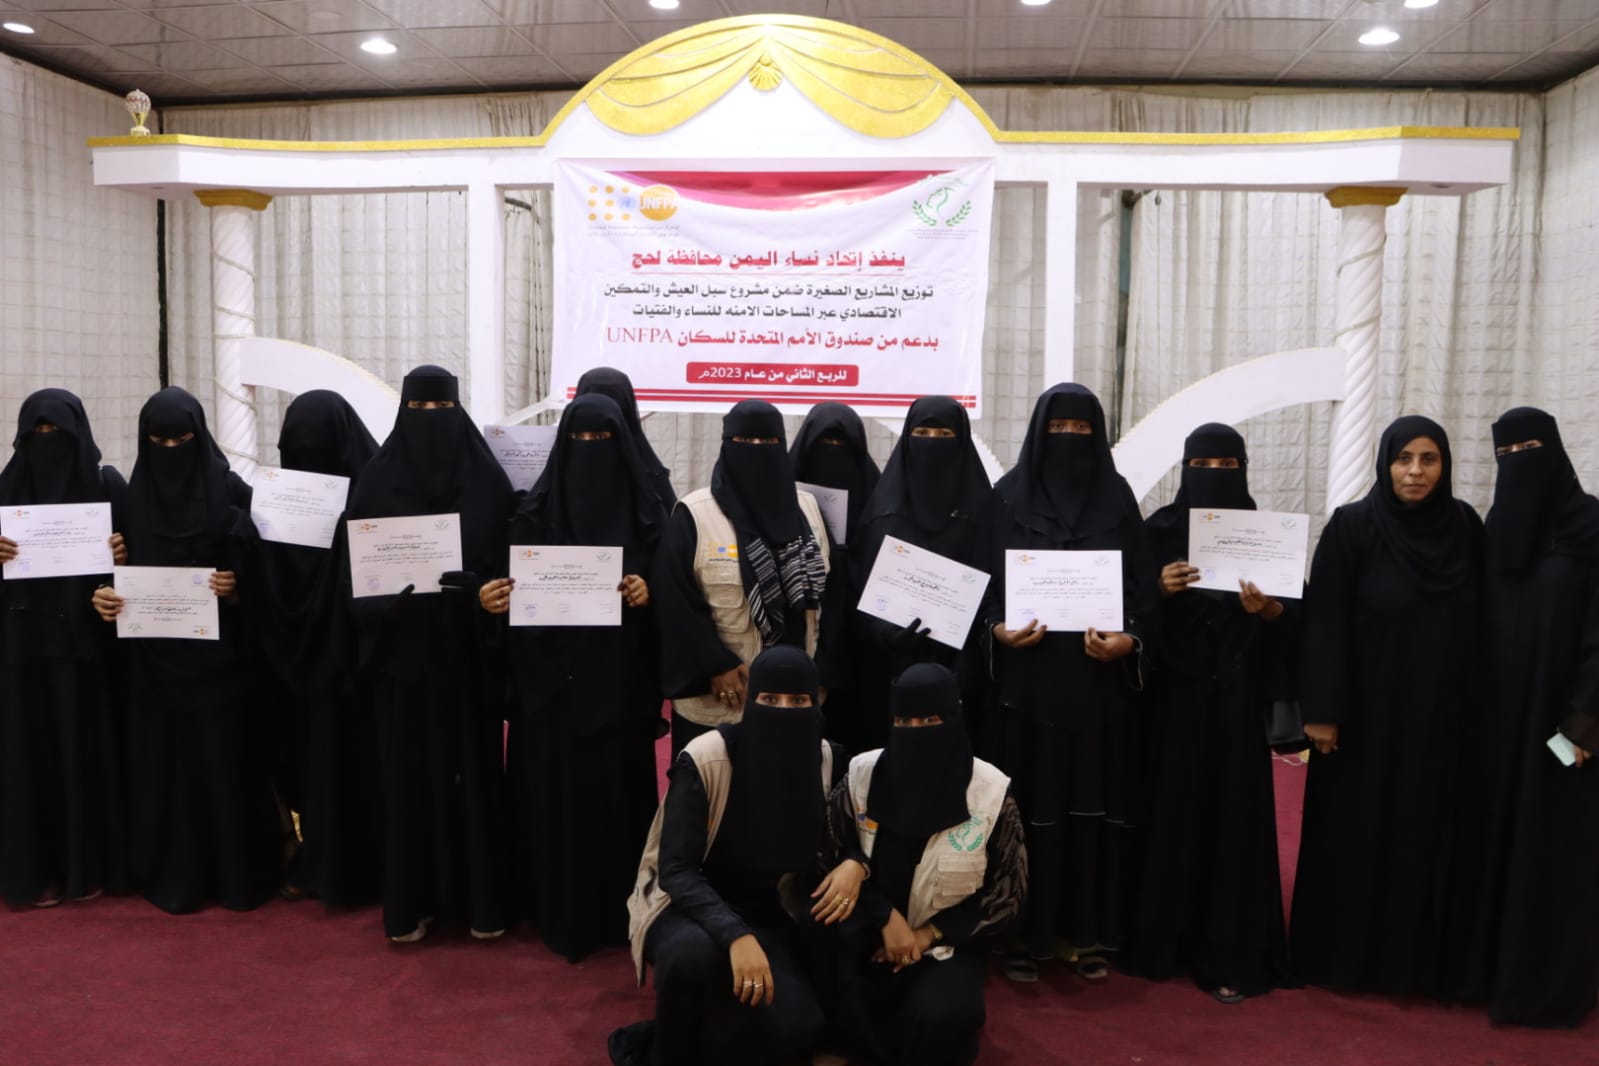 اتحاد نساء اليمن لحج يدشن توزيع ادوات التمكين للمشاريع الصغيرة ل12 مستفيذه بربعه الثاني